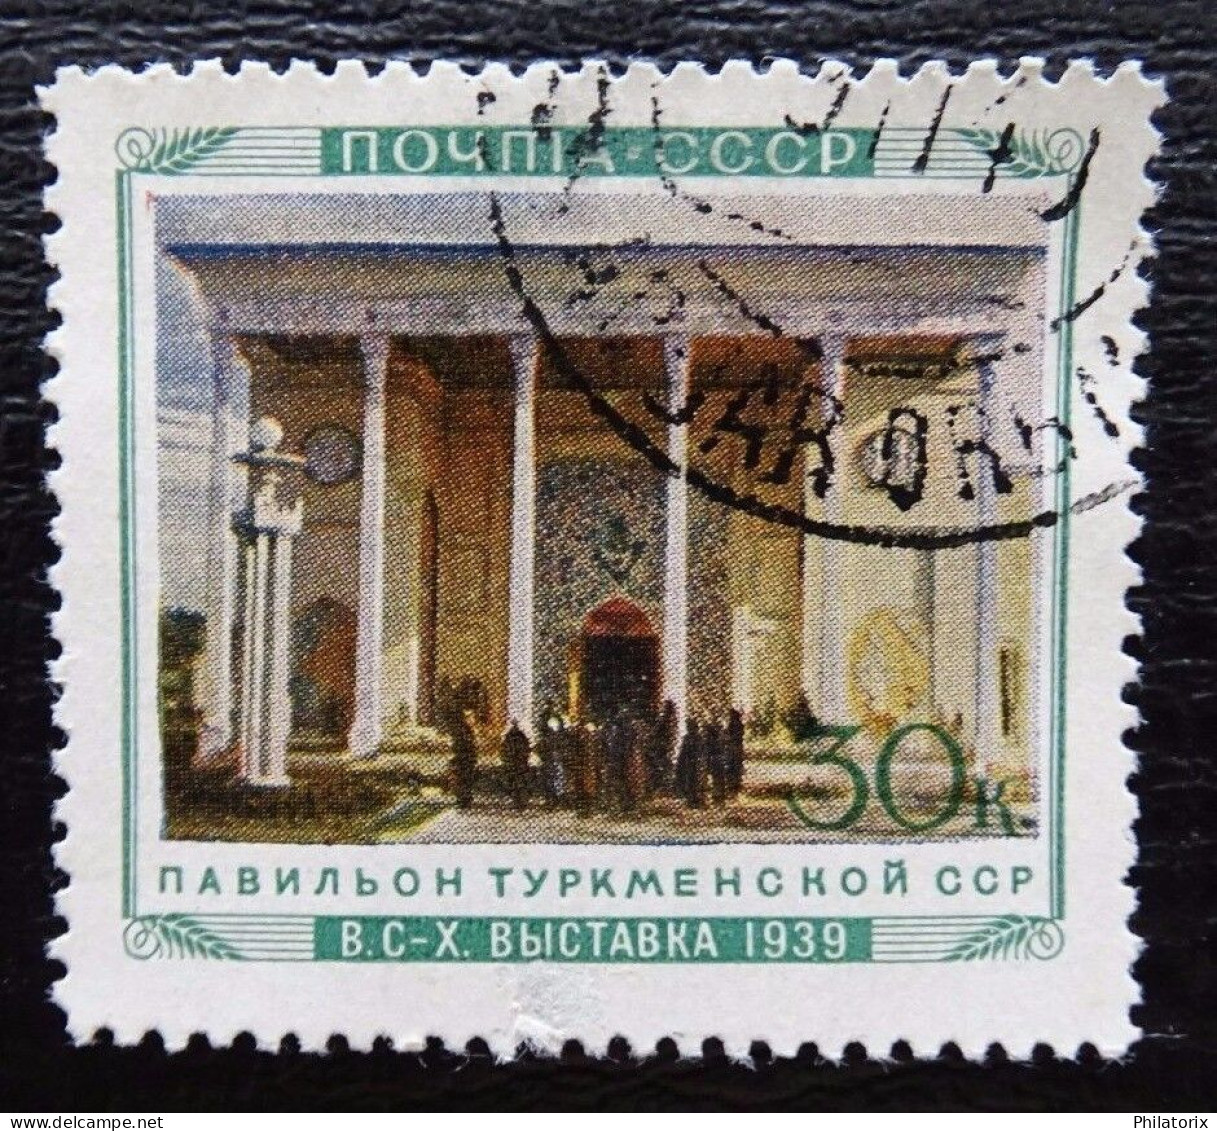 Sowjetunion Mi 773 , Sc 804 , Pavillons (II) , Gestempelt , Qualitätsgrad II - Used Stamps